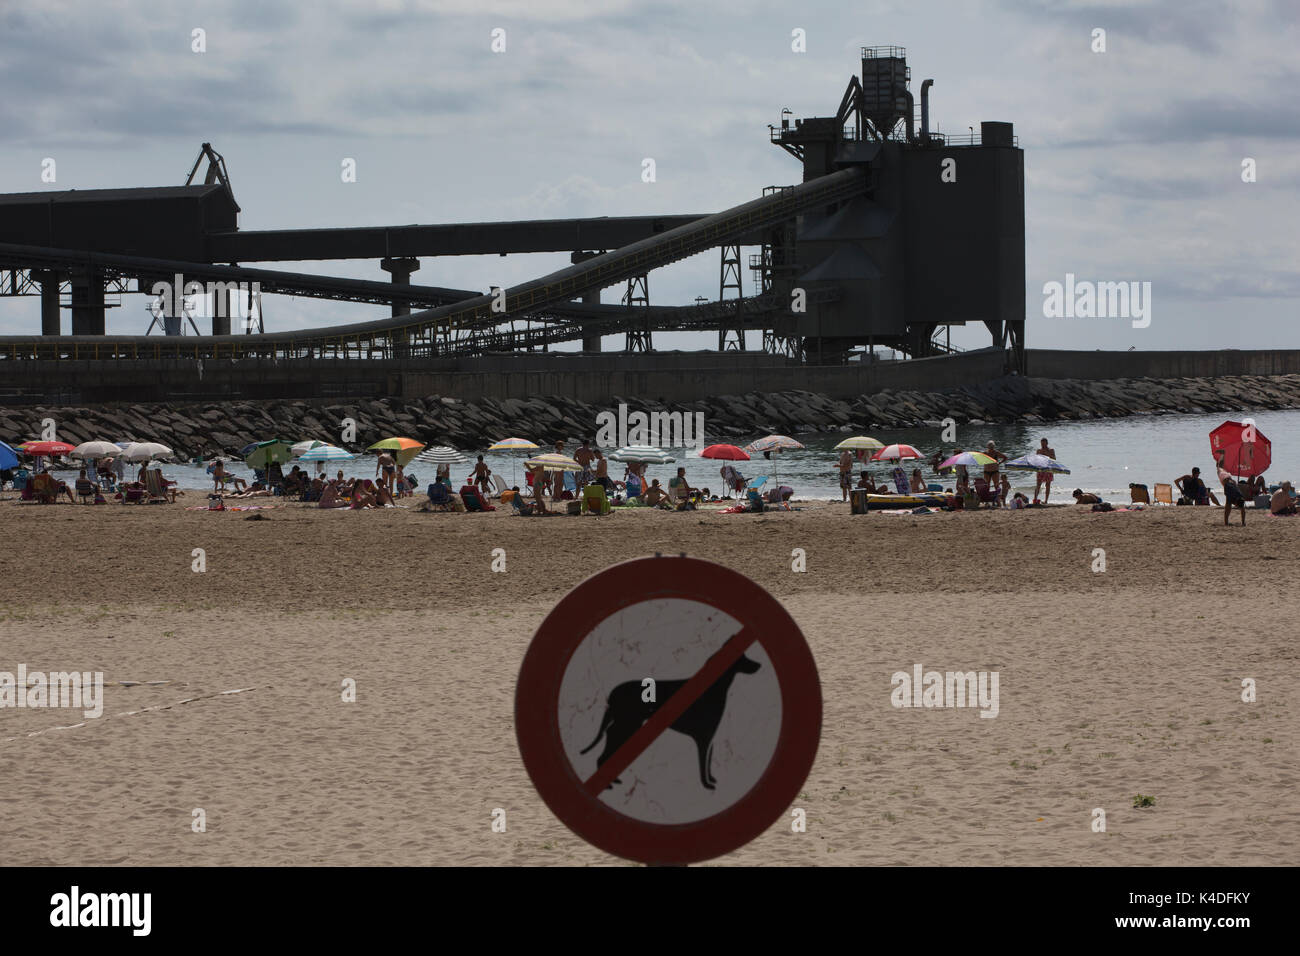 Los turistas disfrutan del verano a lo largo de la playa del Puerto de Alcanar, con vistas a los edificios industriales de la planta cementera Cemex, Alacanar, Tarragona, España Foto de stock